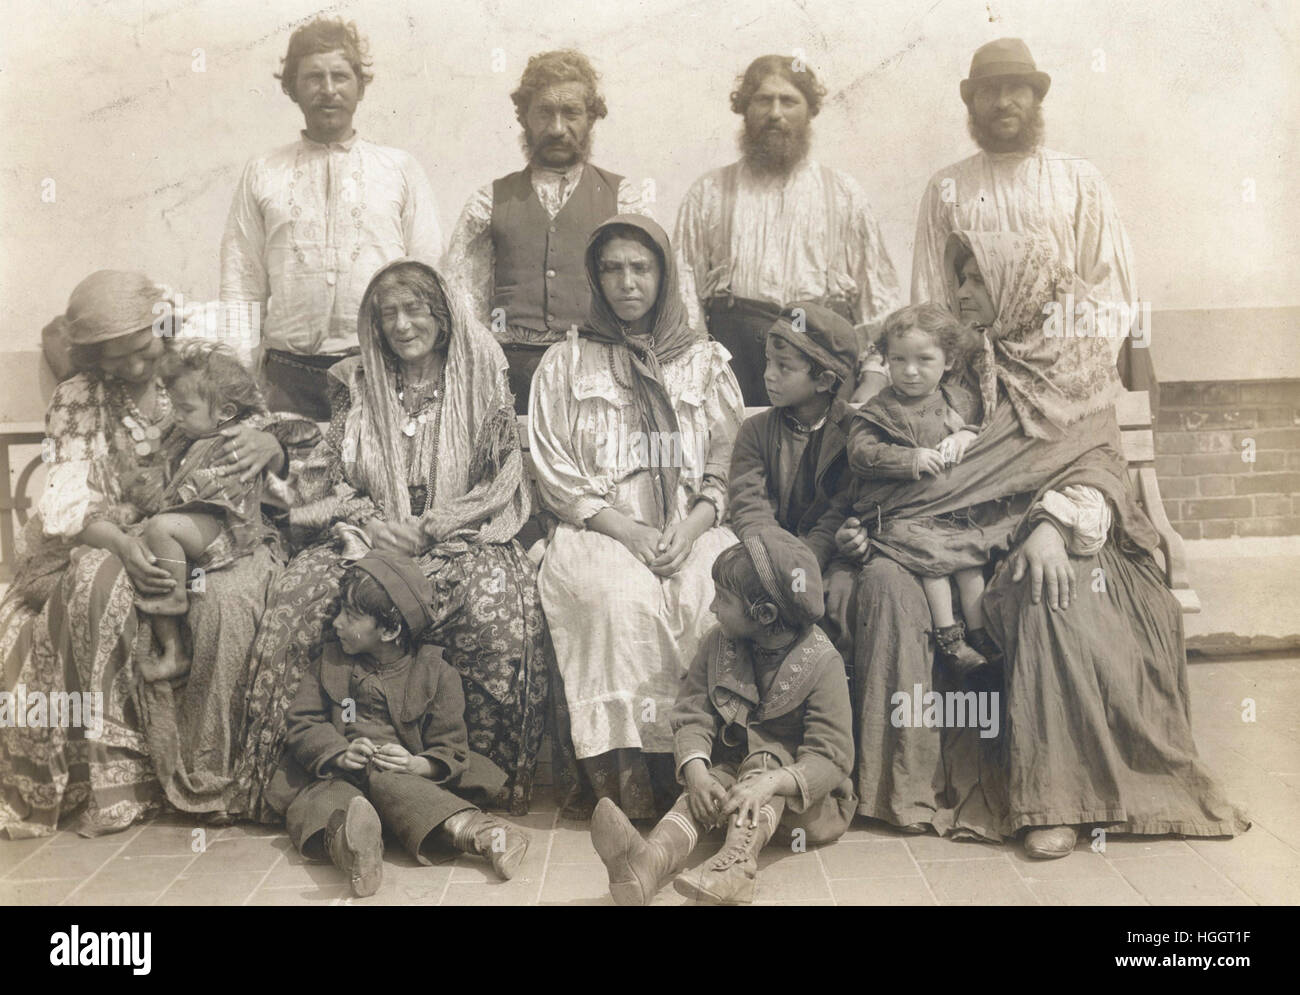 Fotografía de grupo subtitulado "Los gitanos húngaros, los cuales fueron deportados" en el New York Times, el domingo 12 de febrero, 1905 - Ellis Island Immigration Station 1902-1913 Foto de stock